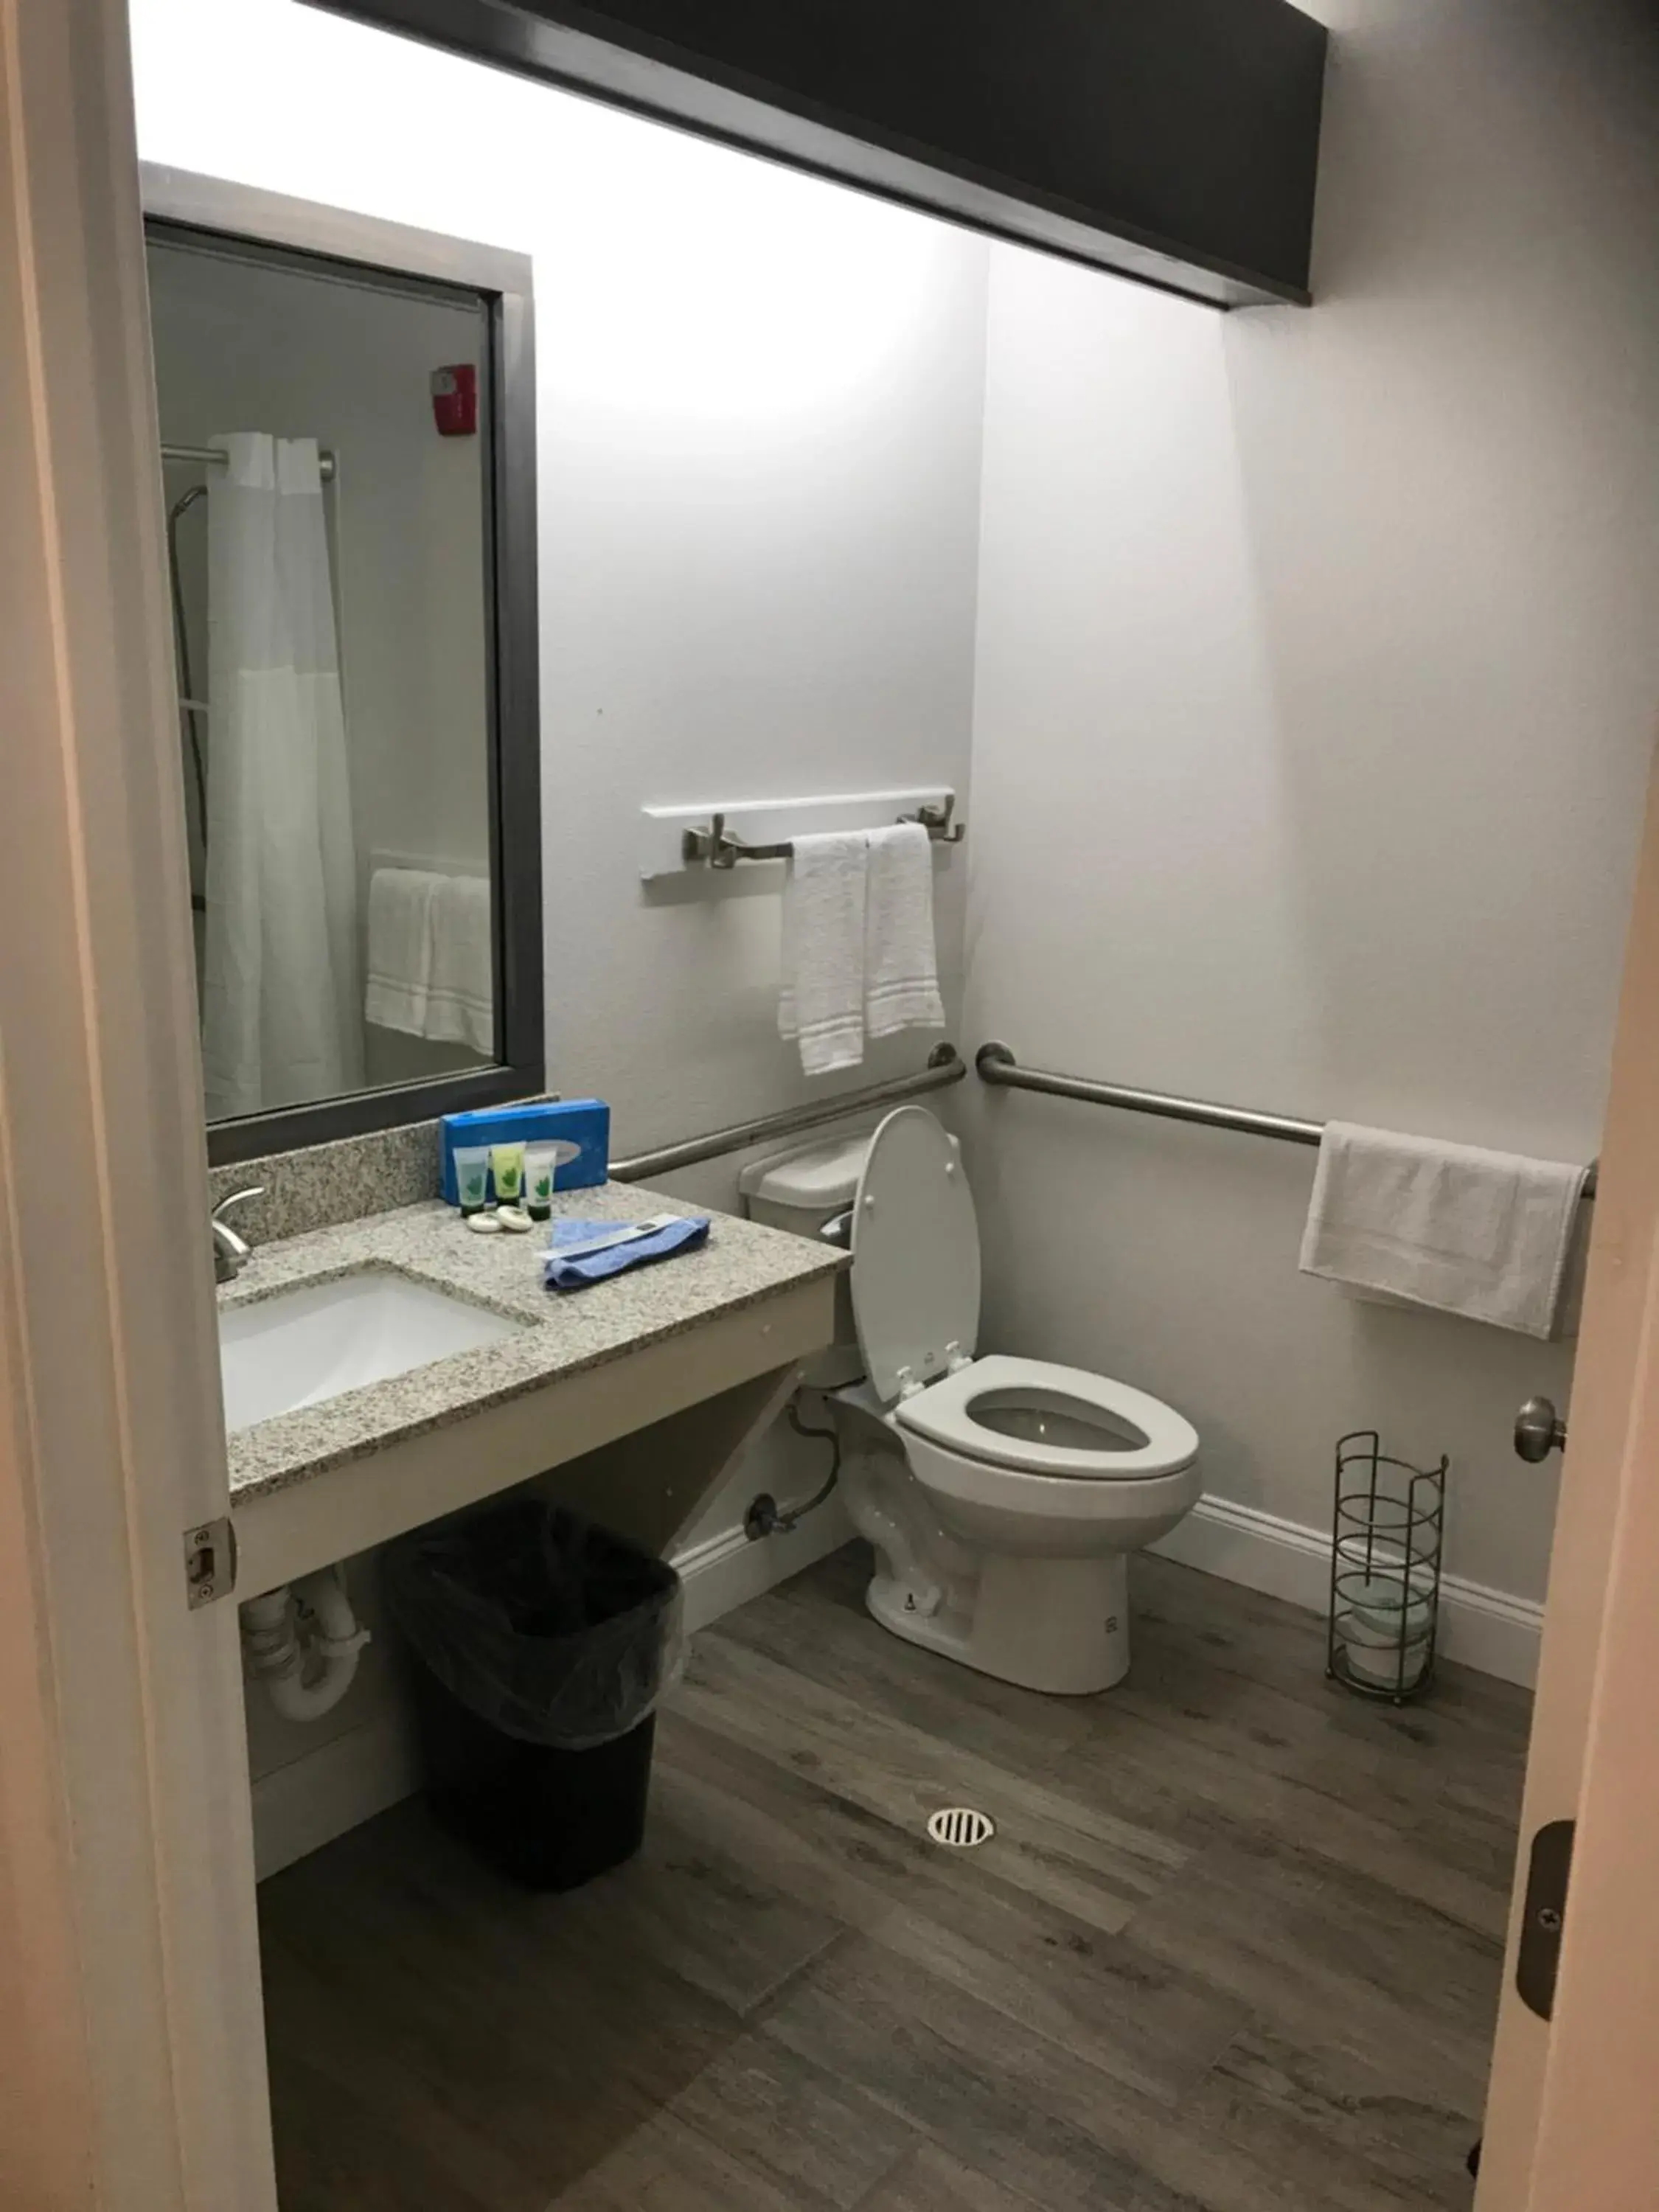 Bathroom in Hotel Pensacola